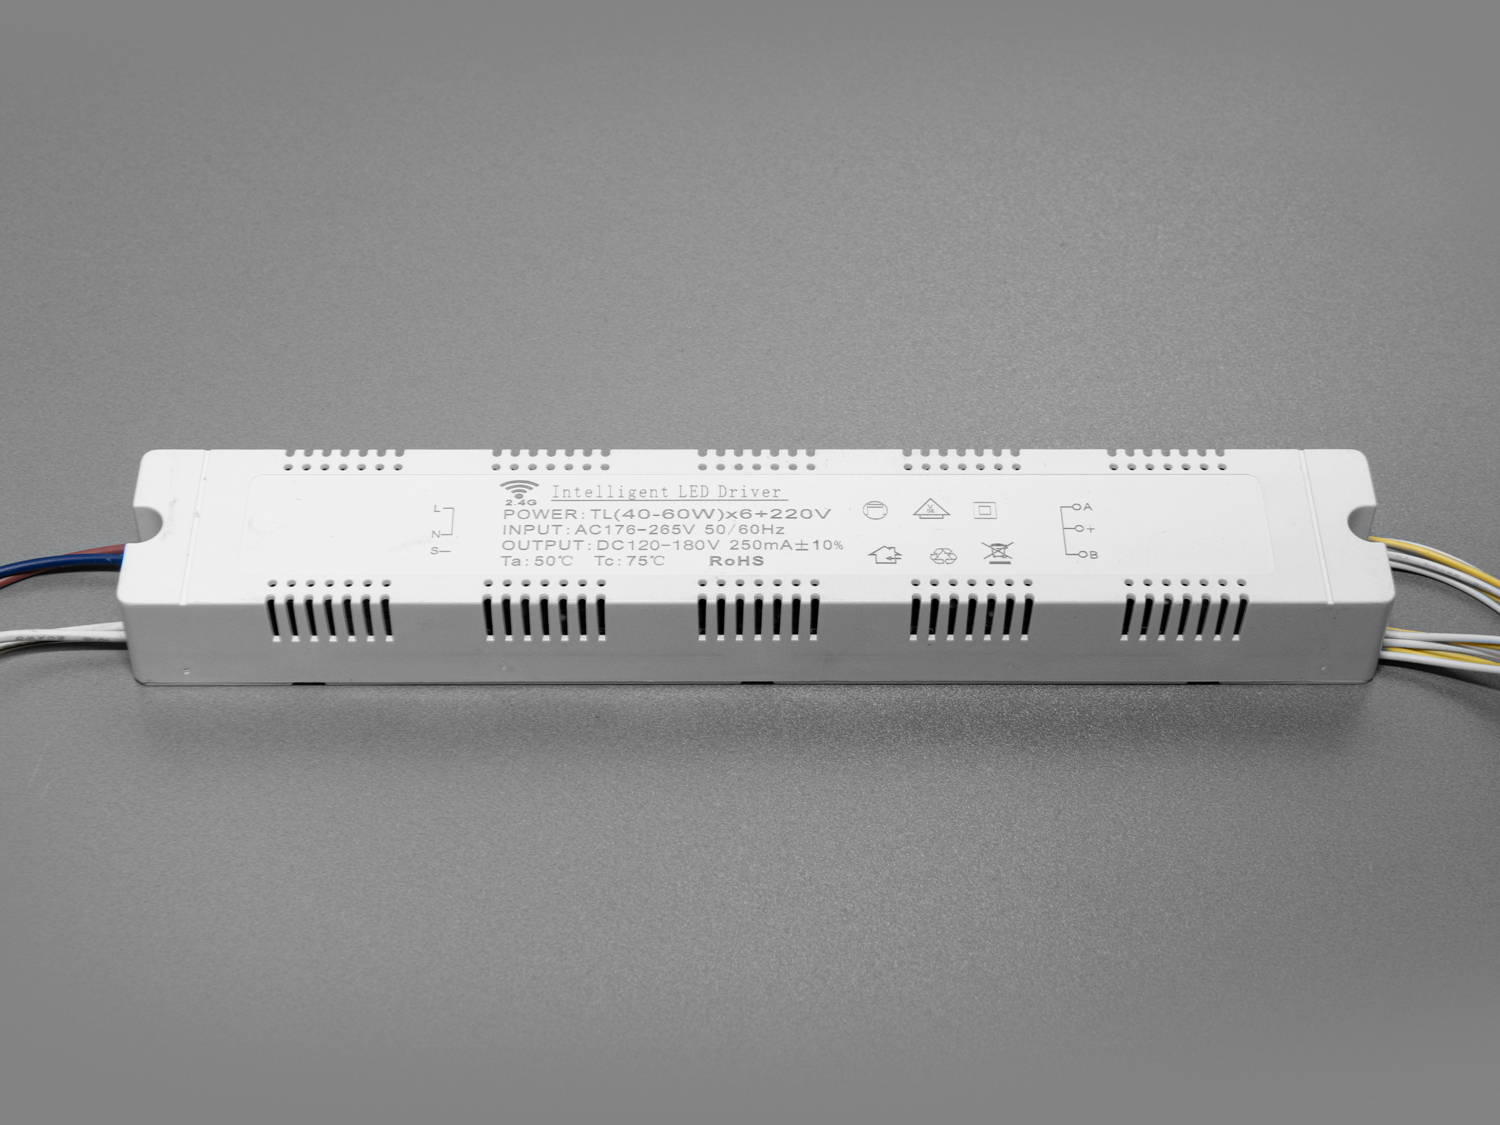 Універсальний комплект для переобладнання світлодіодних люстр.

Блок приймача пульта встановлюється місце рідного блоку живлення світлодіодної люстри. Цей комплект може бути використаний на люстрах з робочим струмом світлодіодних модулів від 210 до 300 мА. Діммер має 6 вихідних каналів для підключення до стандартної світлодіодної люстри, схема підключення 